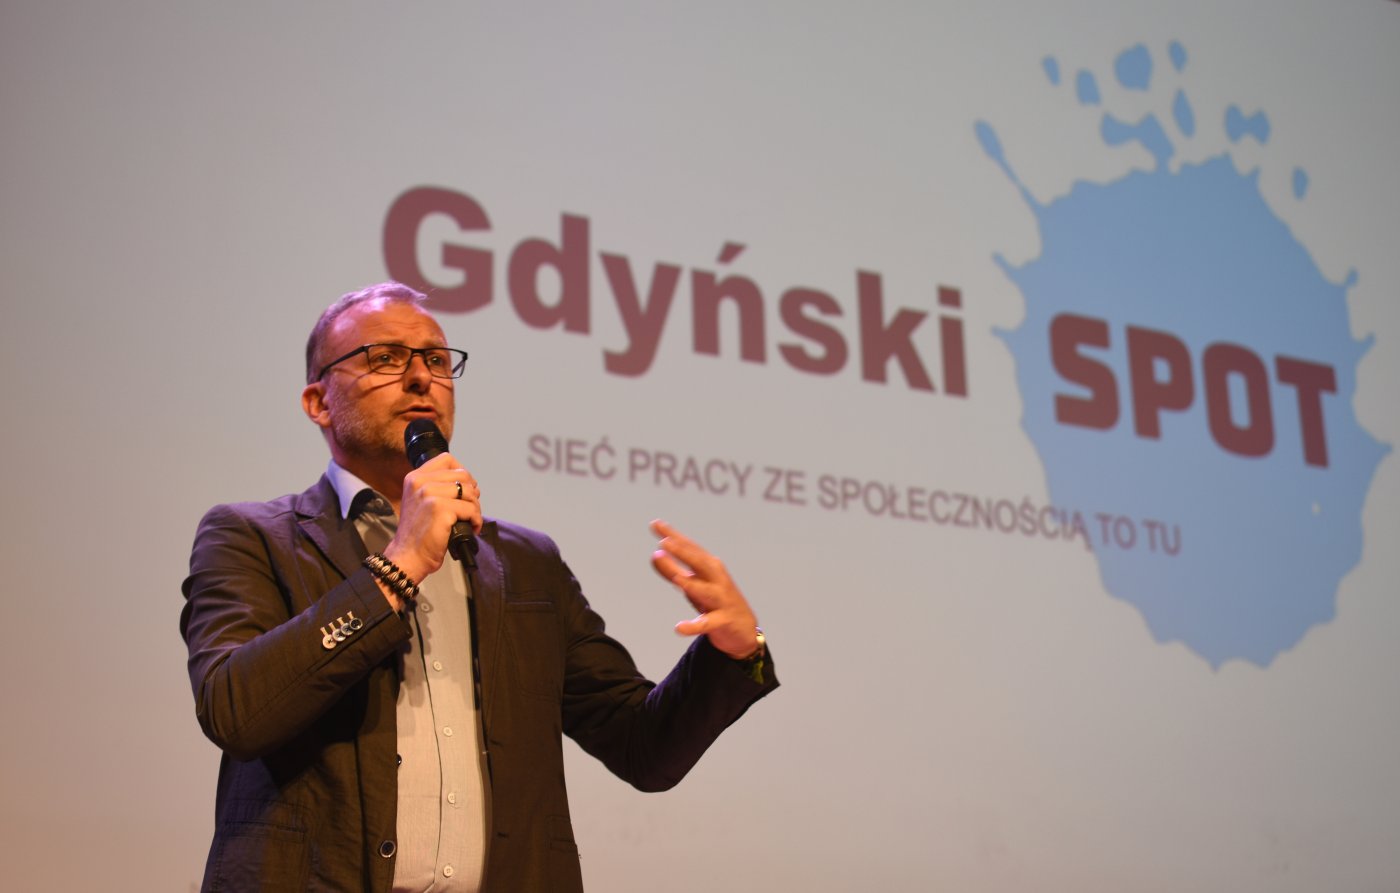   Konferencję otworzył Michał Guć, wiceprezydent Gdyni ds. innowacji //fot. Jan Ziarnicki